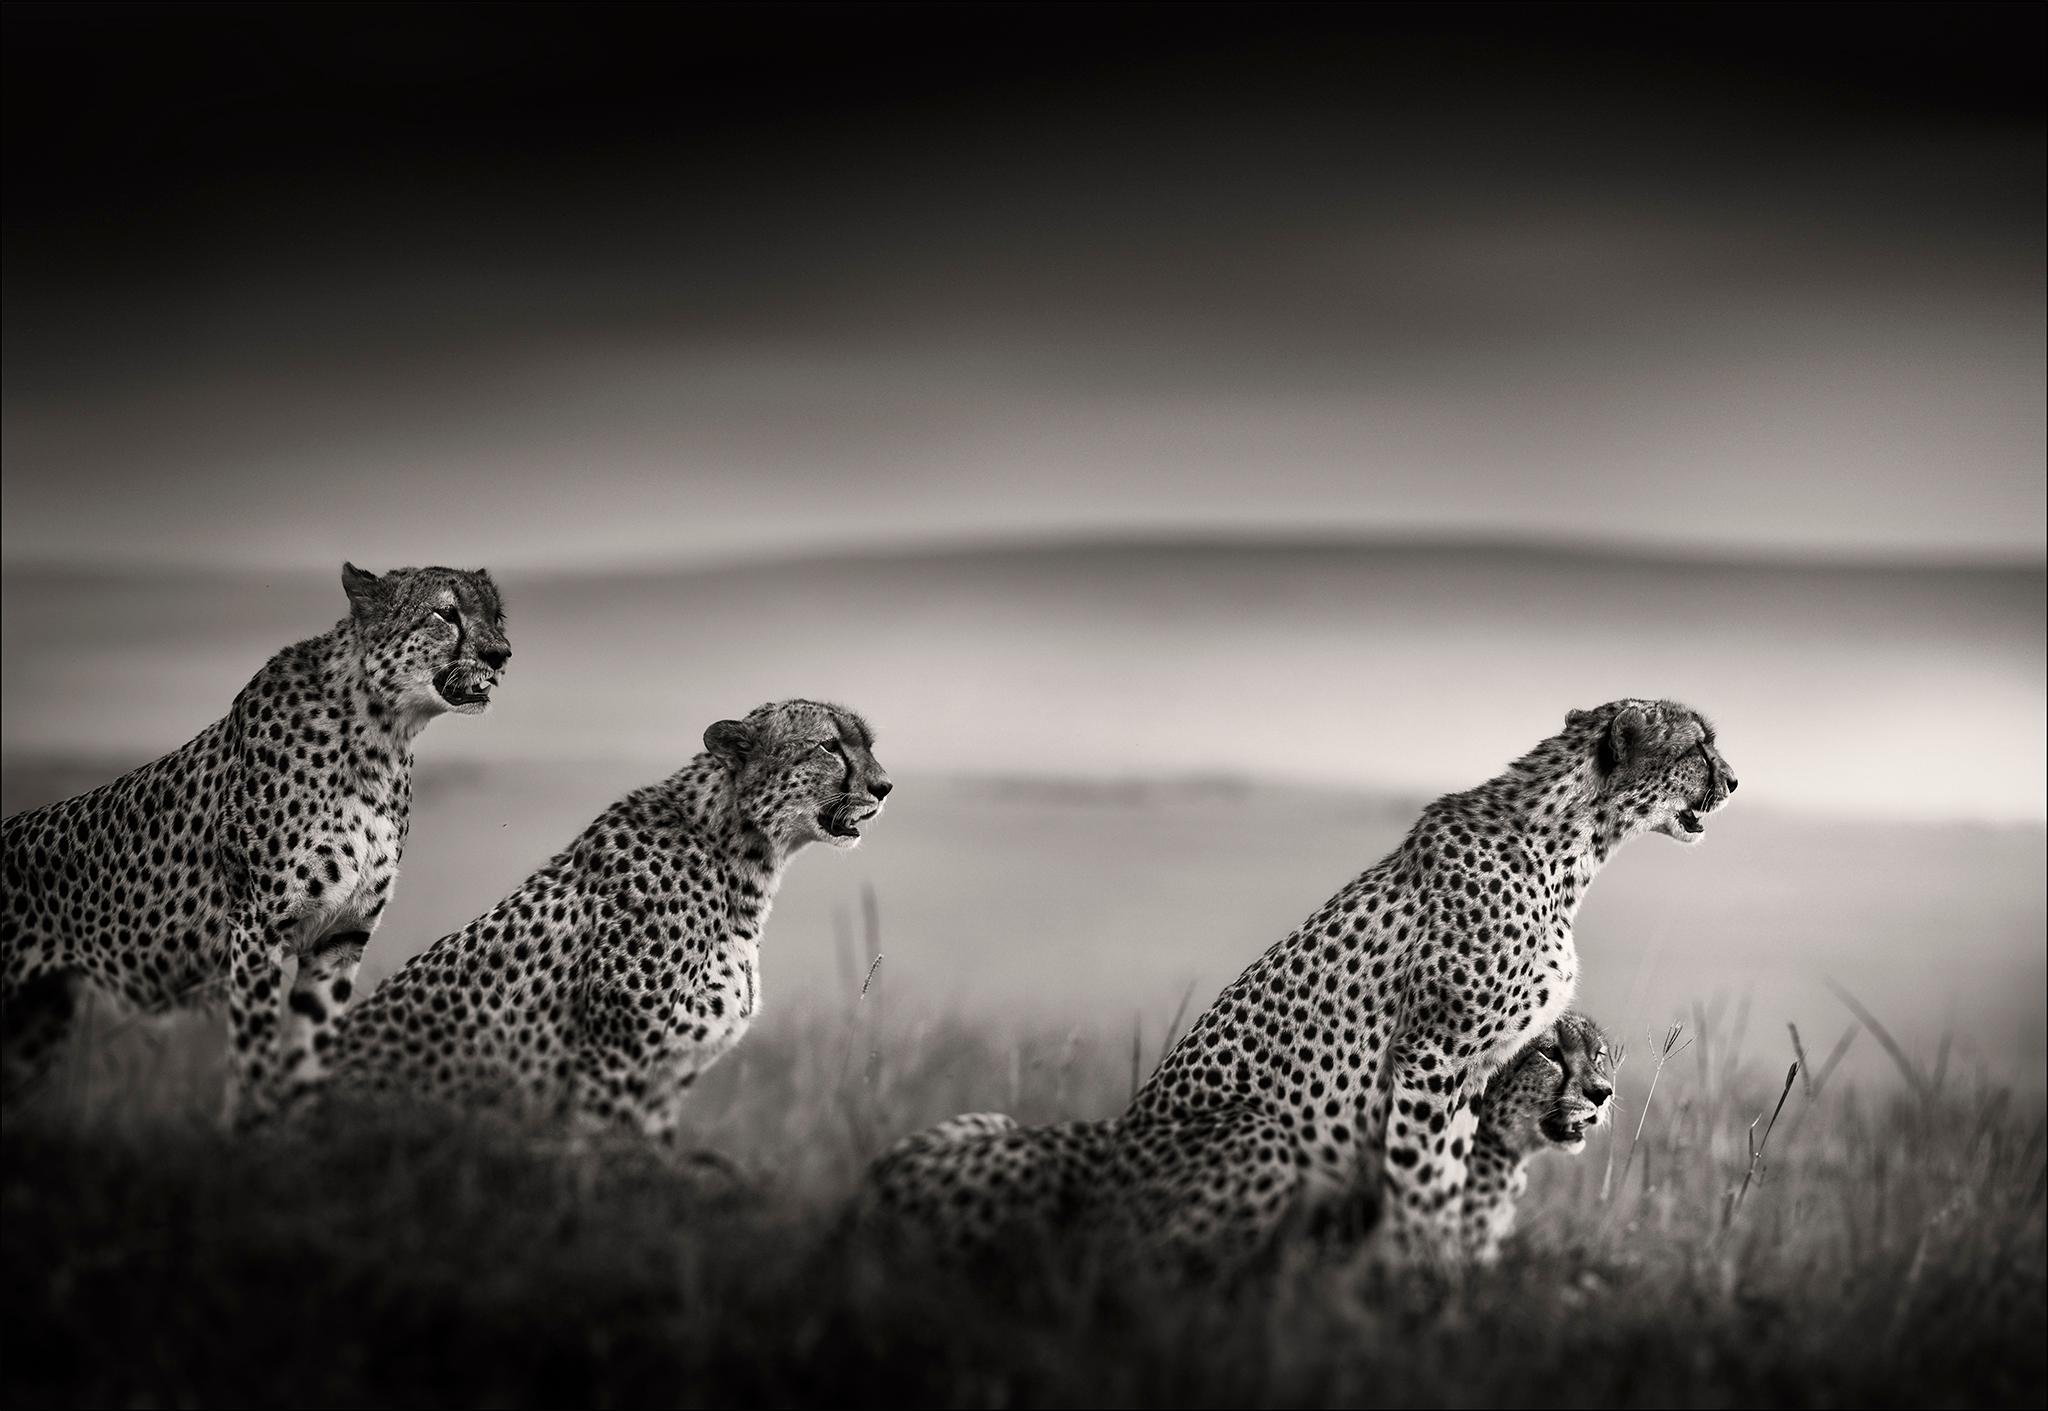 Tano Bora, Cheetah, blackandhwite photography, Africa, Portrait, Wildlife